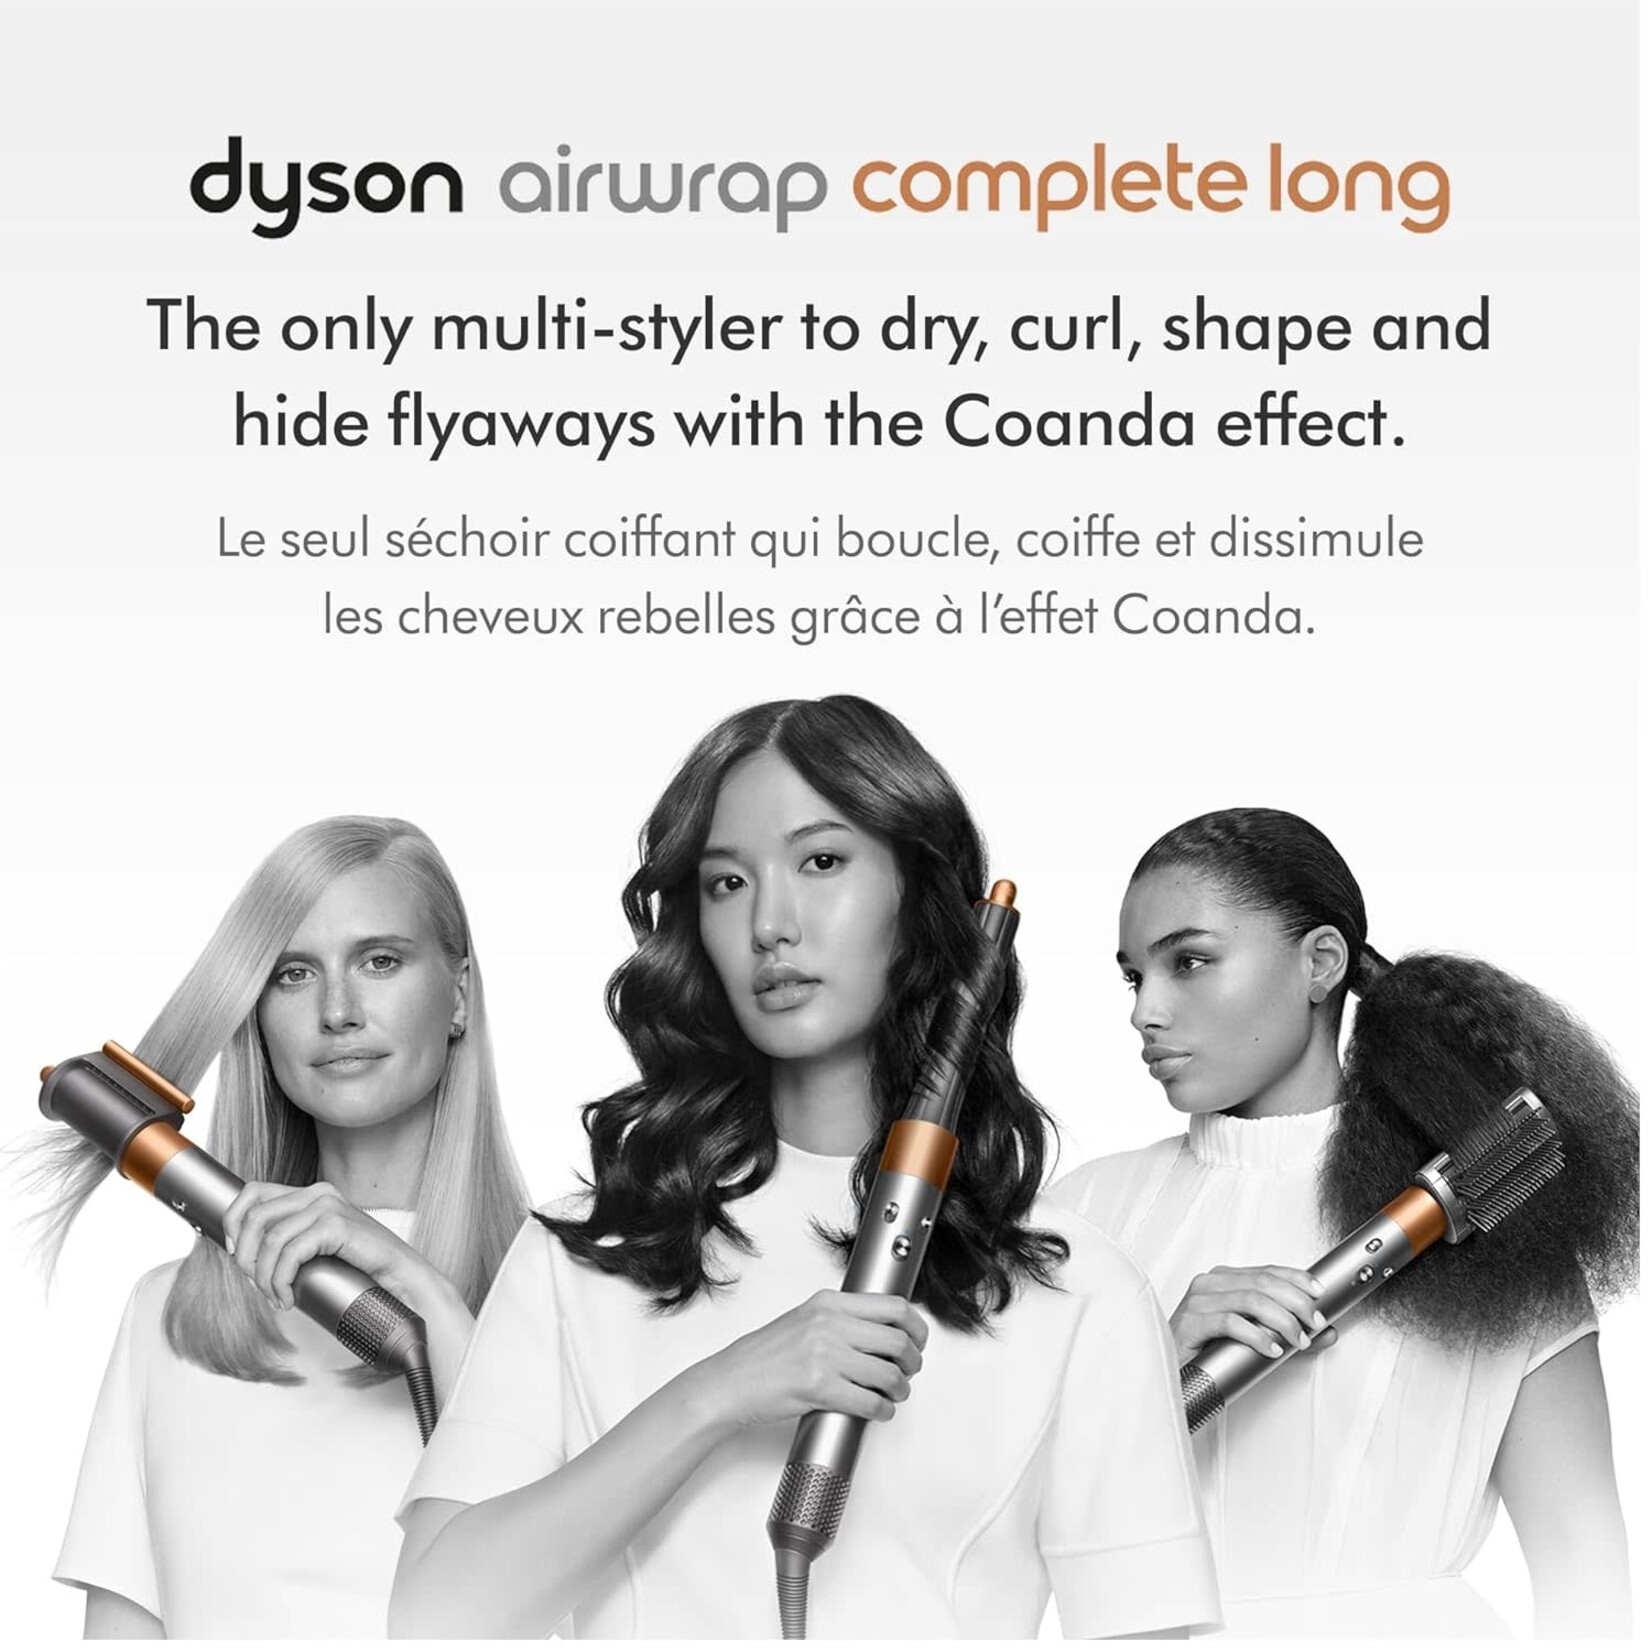 Opened - Dyson Airwrap™ Multi-Styler Complete Long Origin